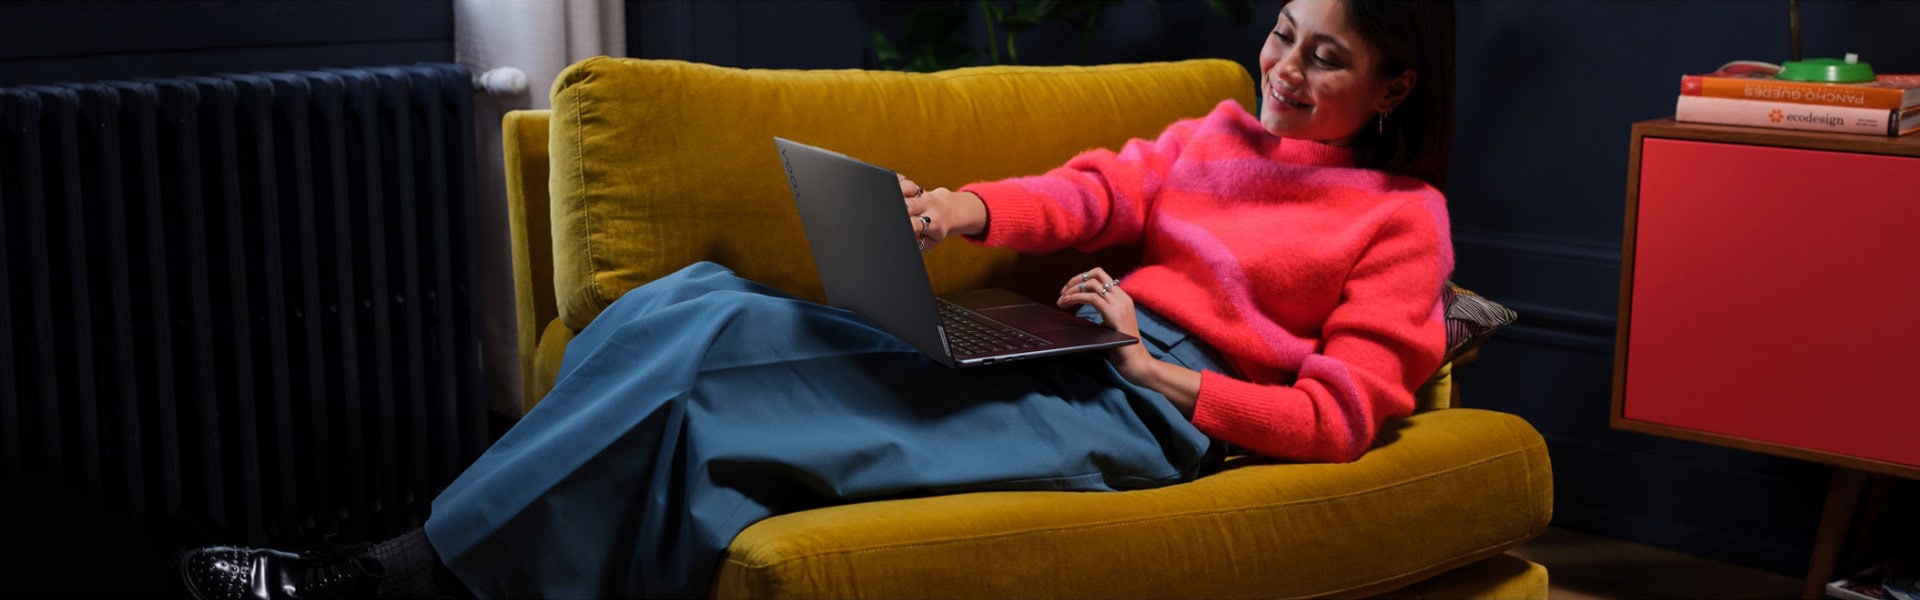 Donna appoggiata su una grande sedia con il notebook Lenovo Yoga sulle gambe